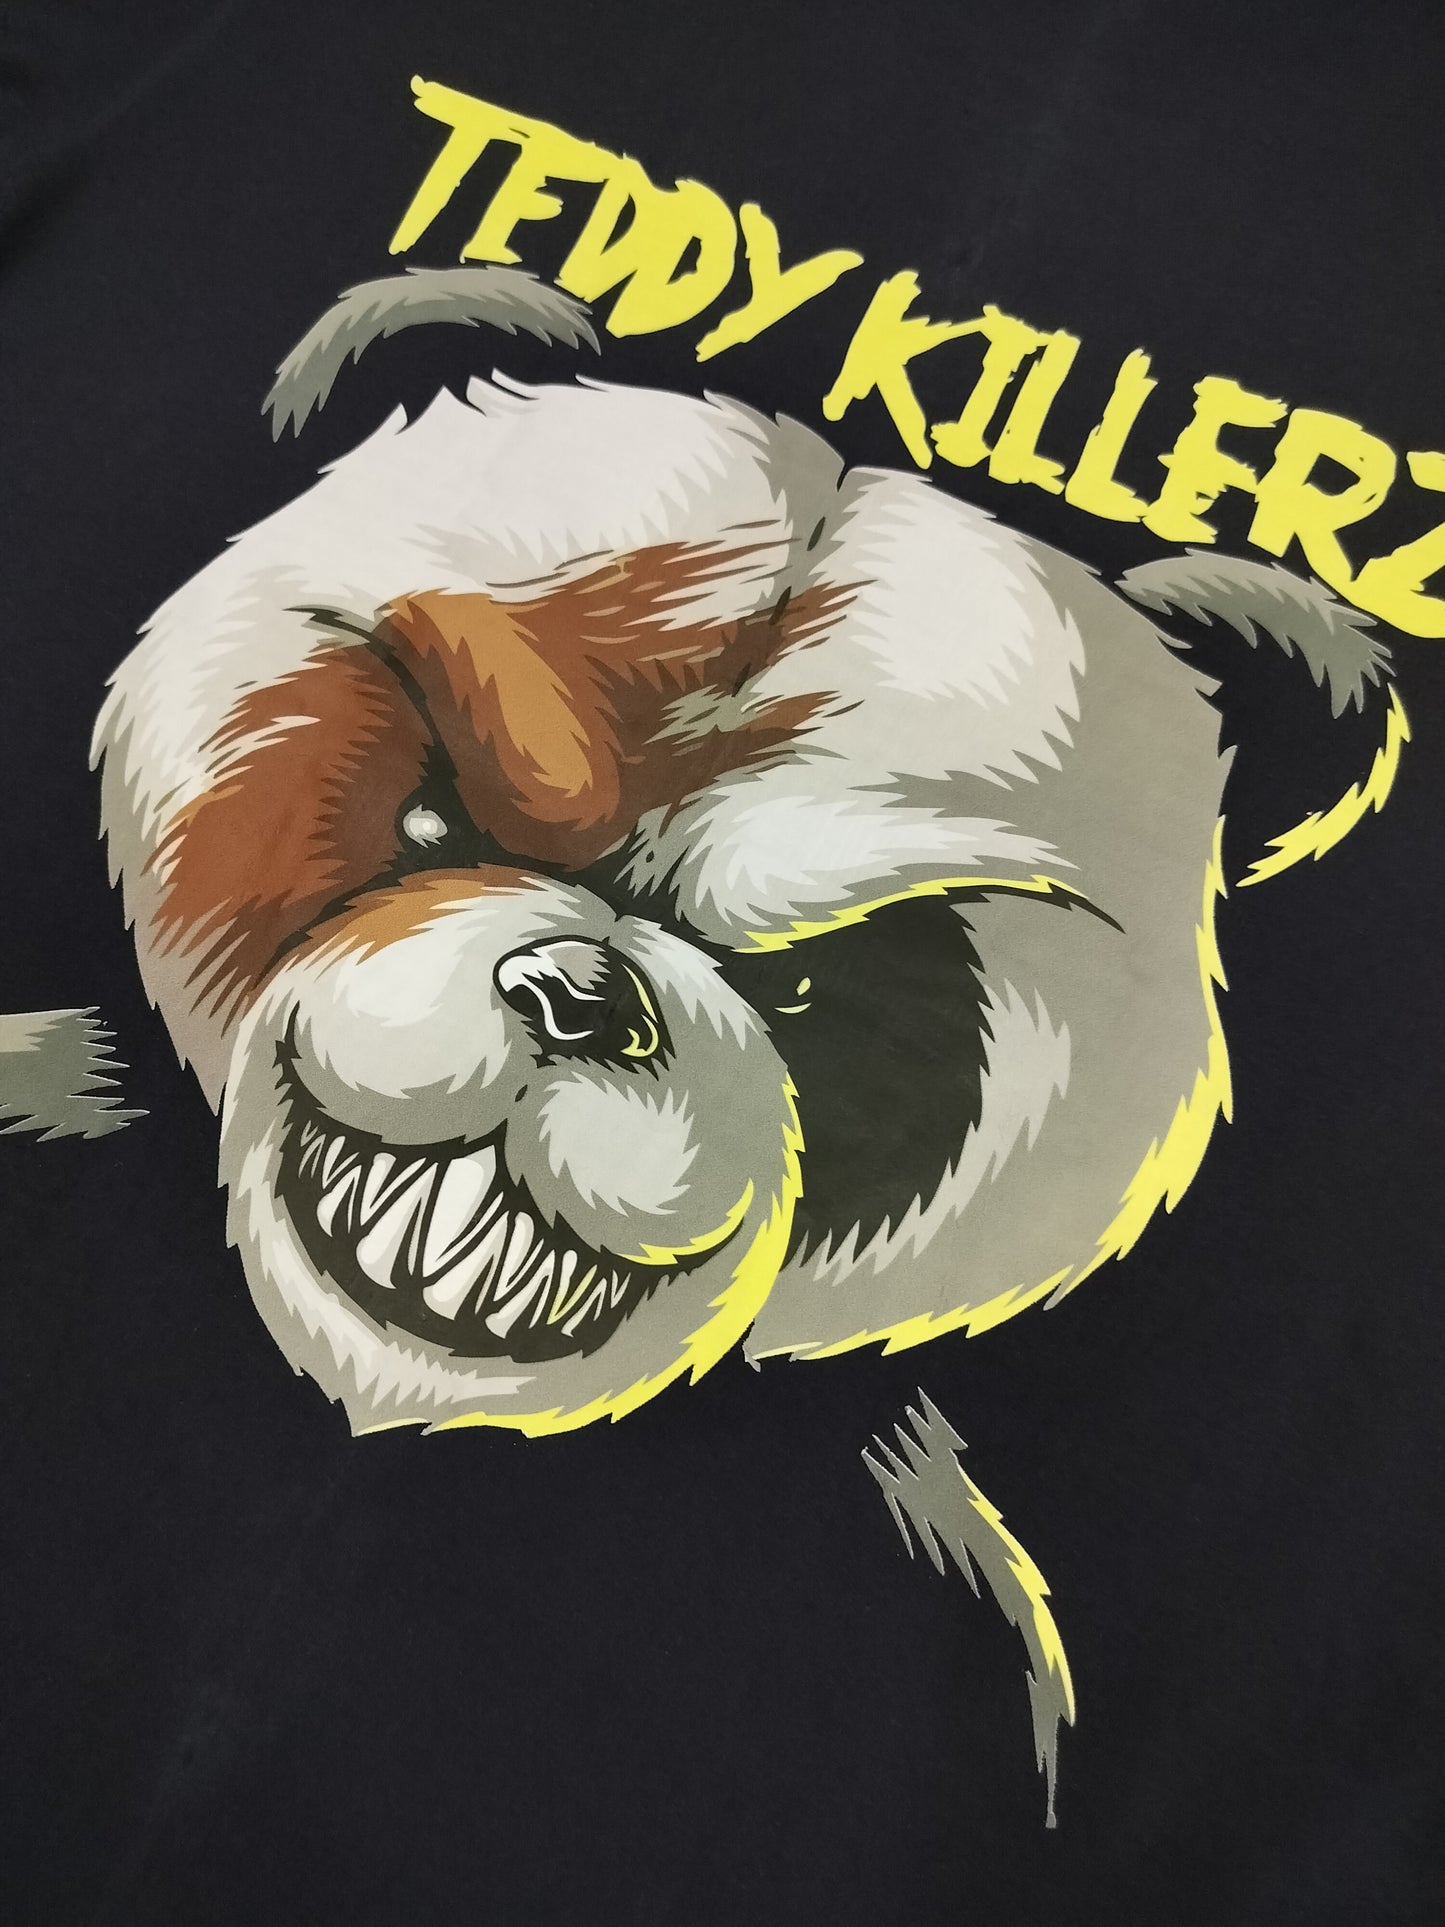 Killer Teddy oversized t shirt